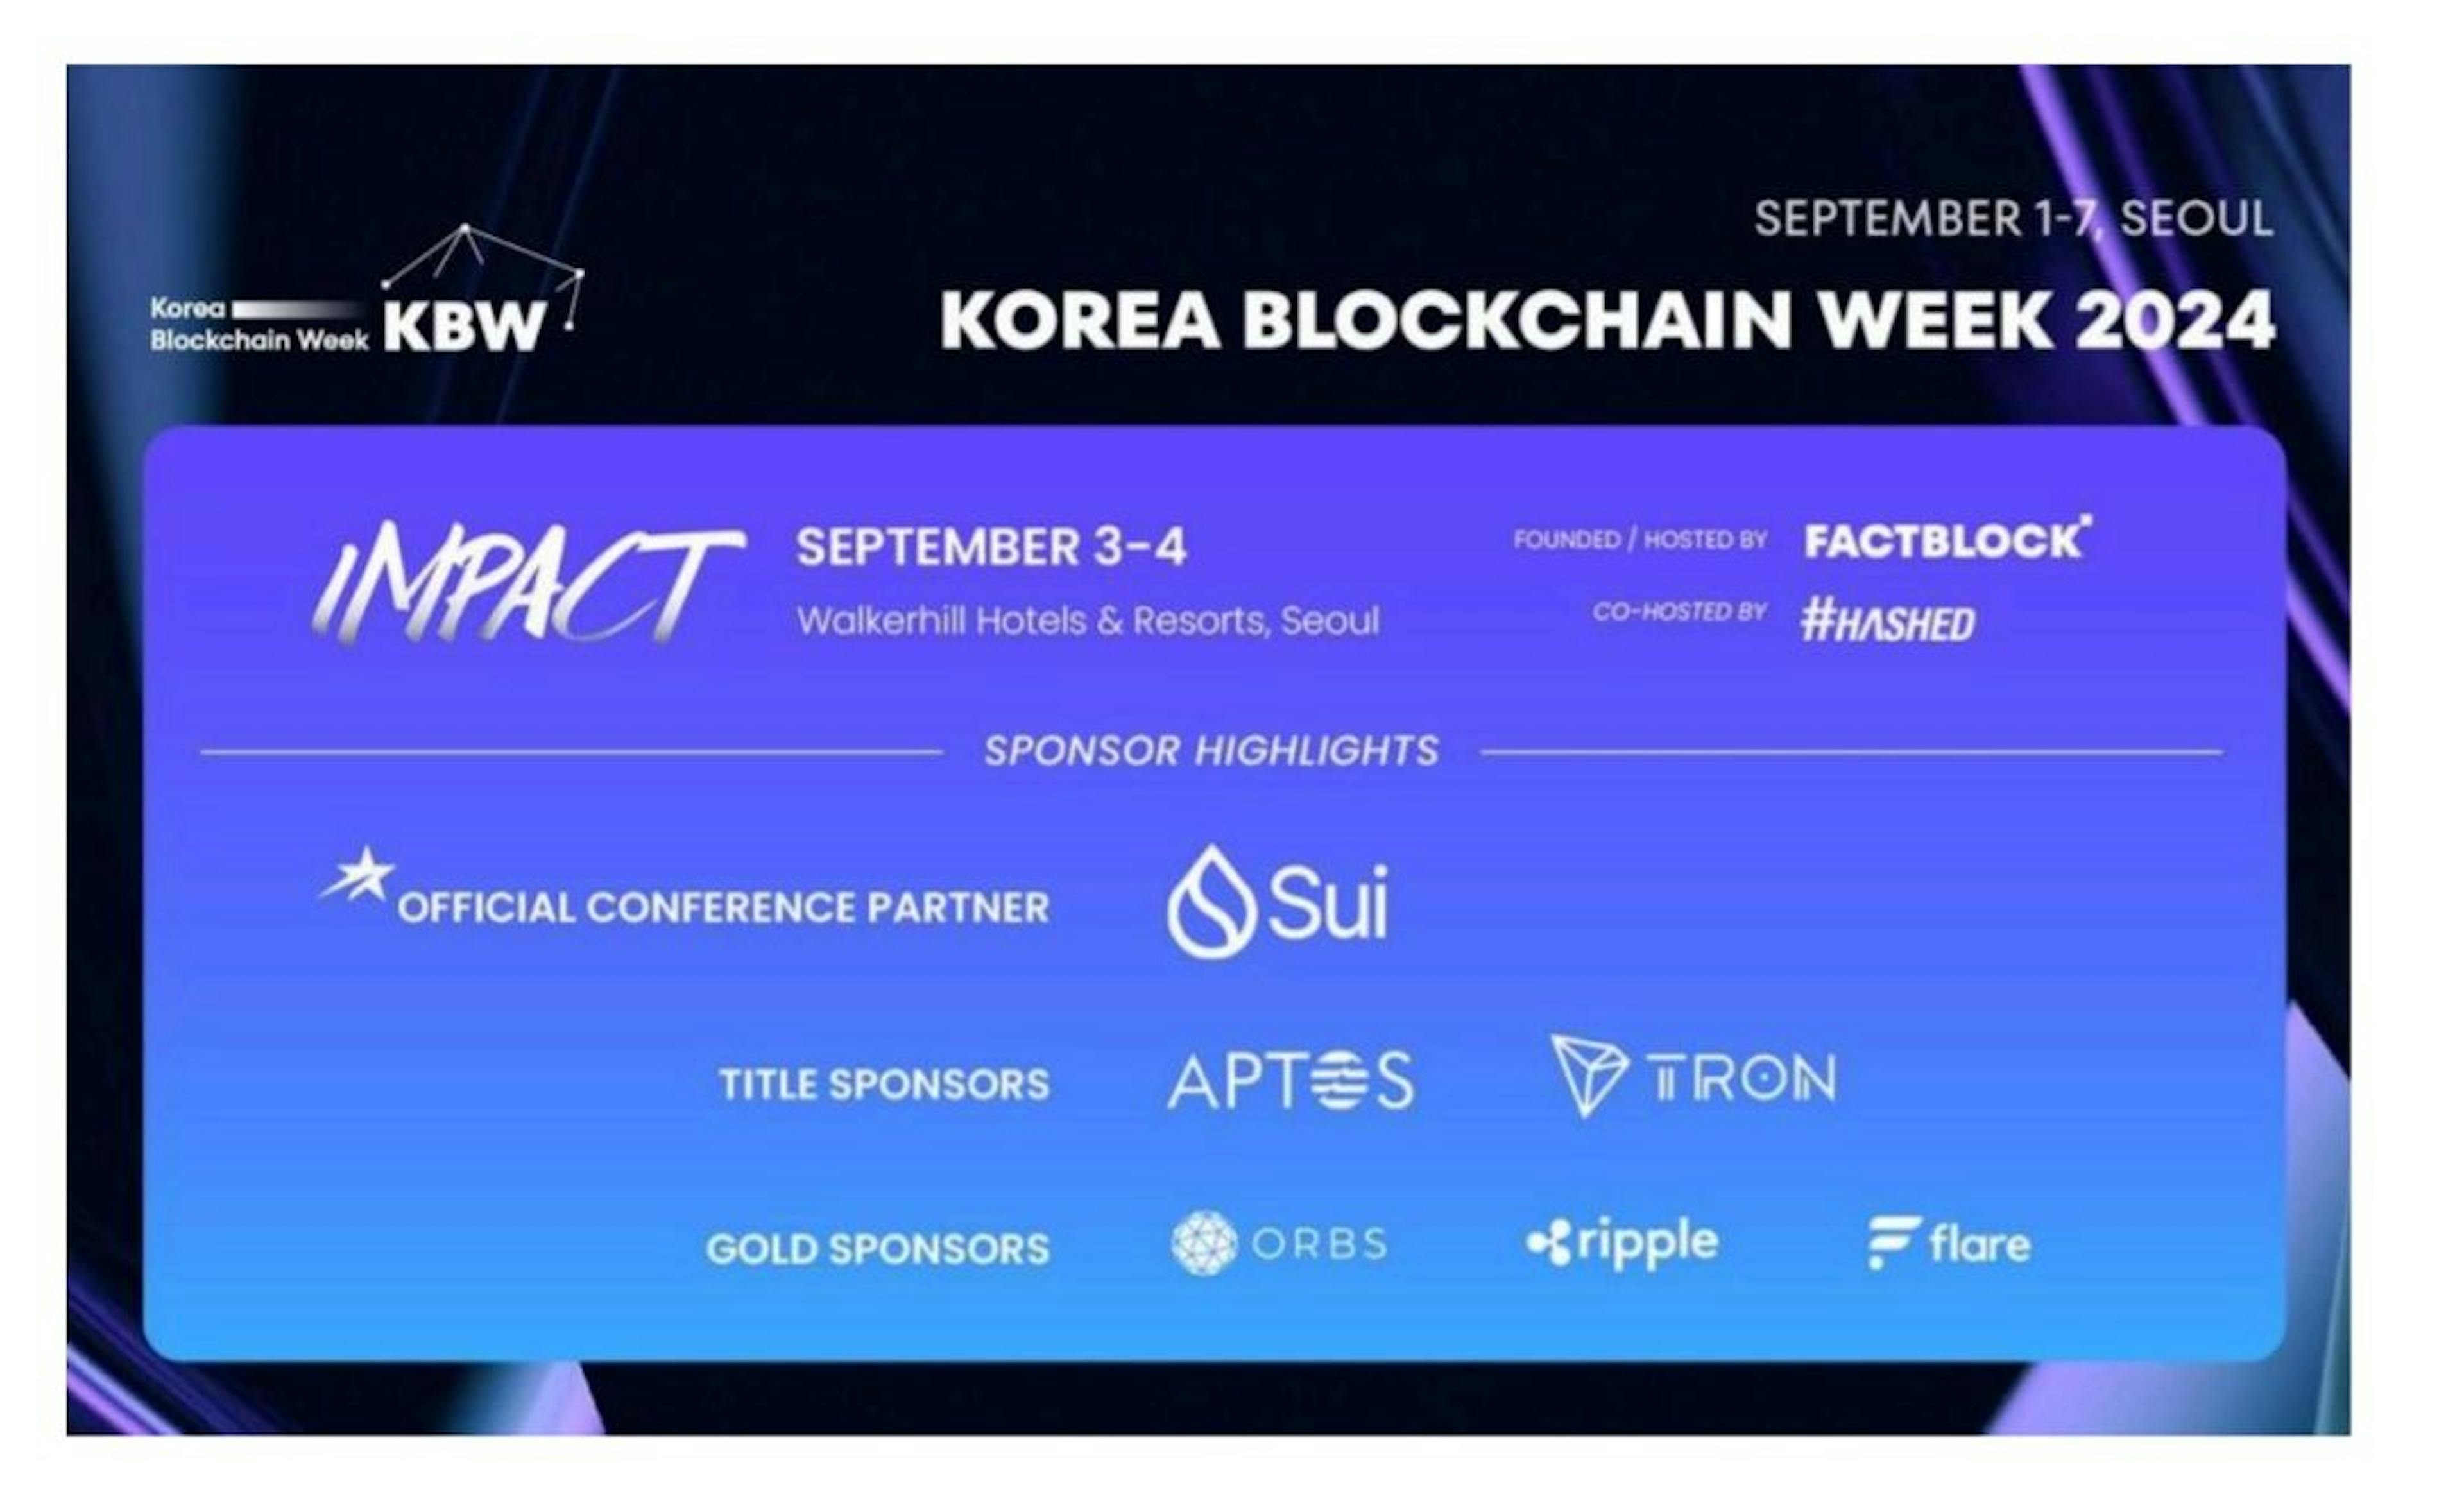 featured image - Tuần lễ Blockchain Hàn Quốc nêu tên Sui là Đối tác chính thức của hội nghị, công bố Diễn giả chính mới